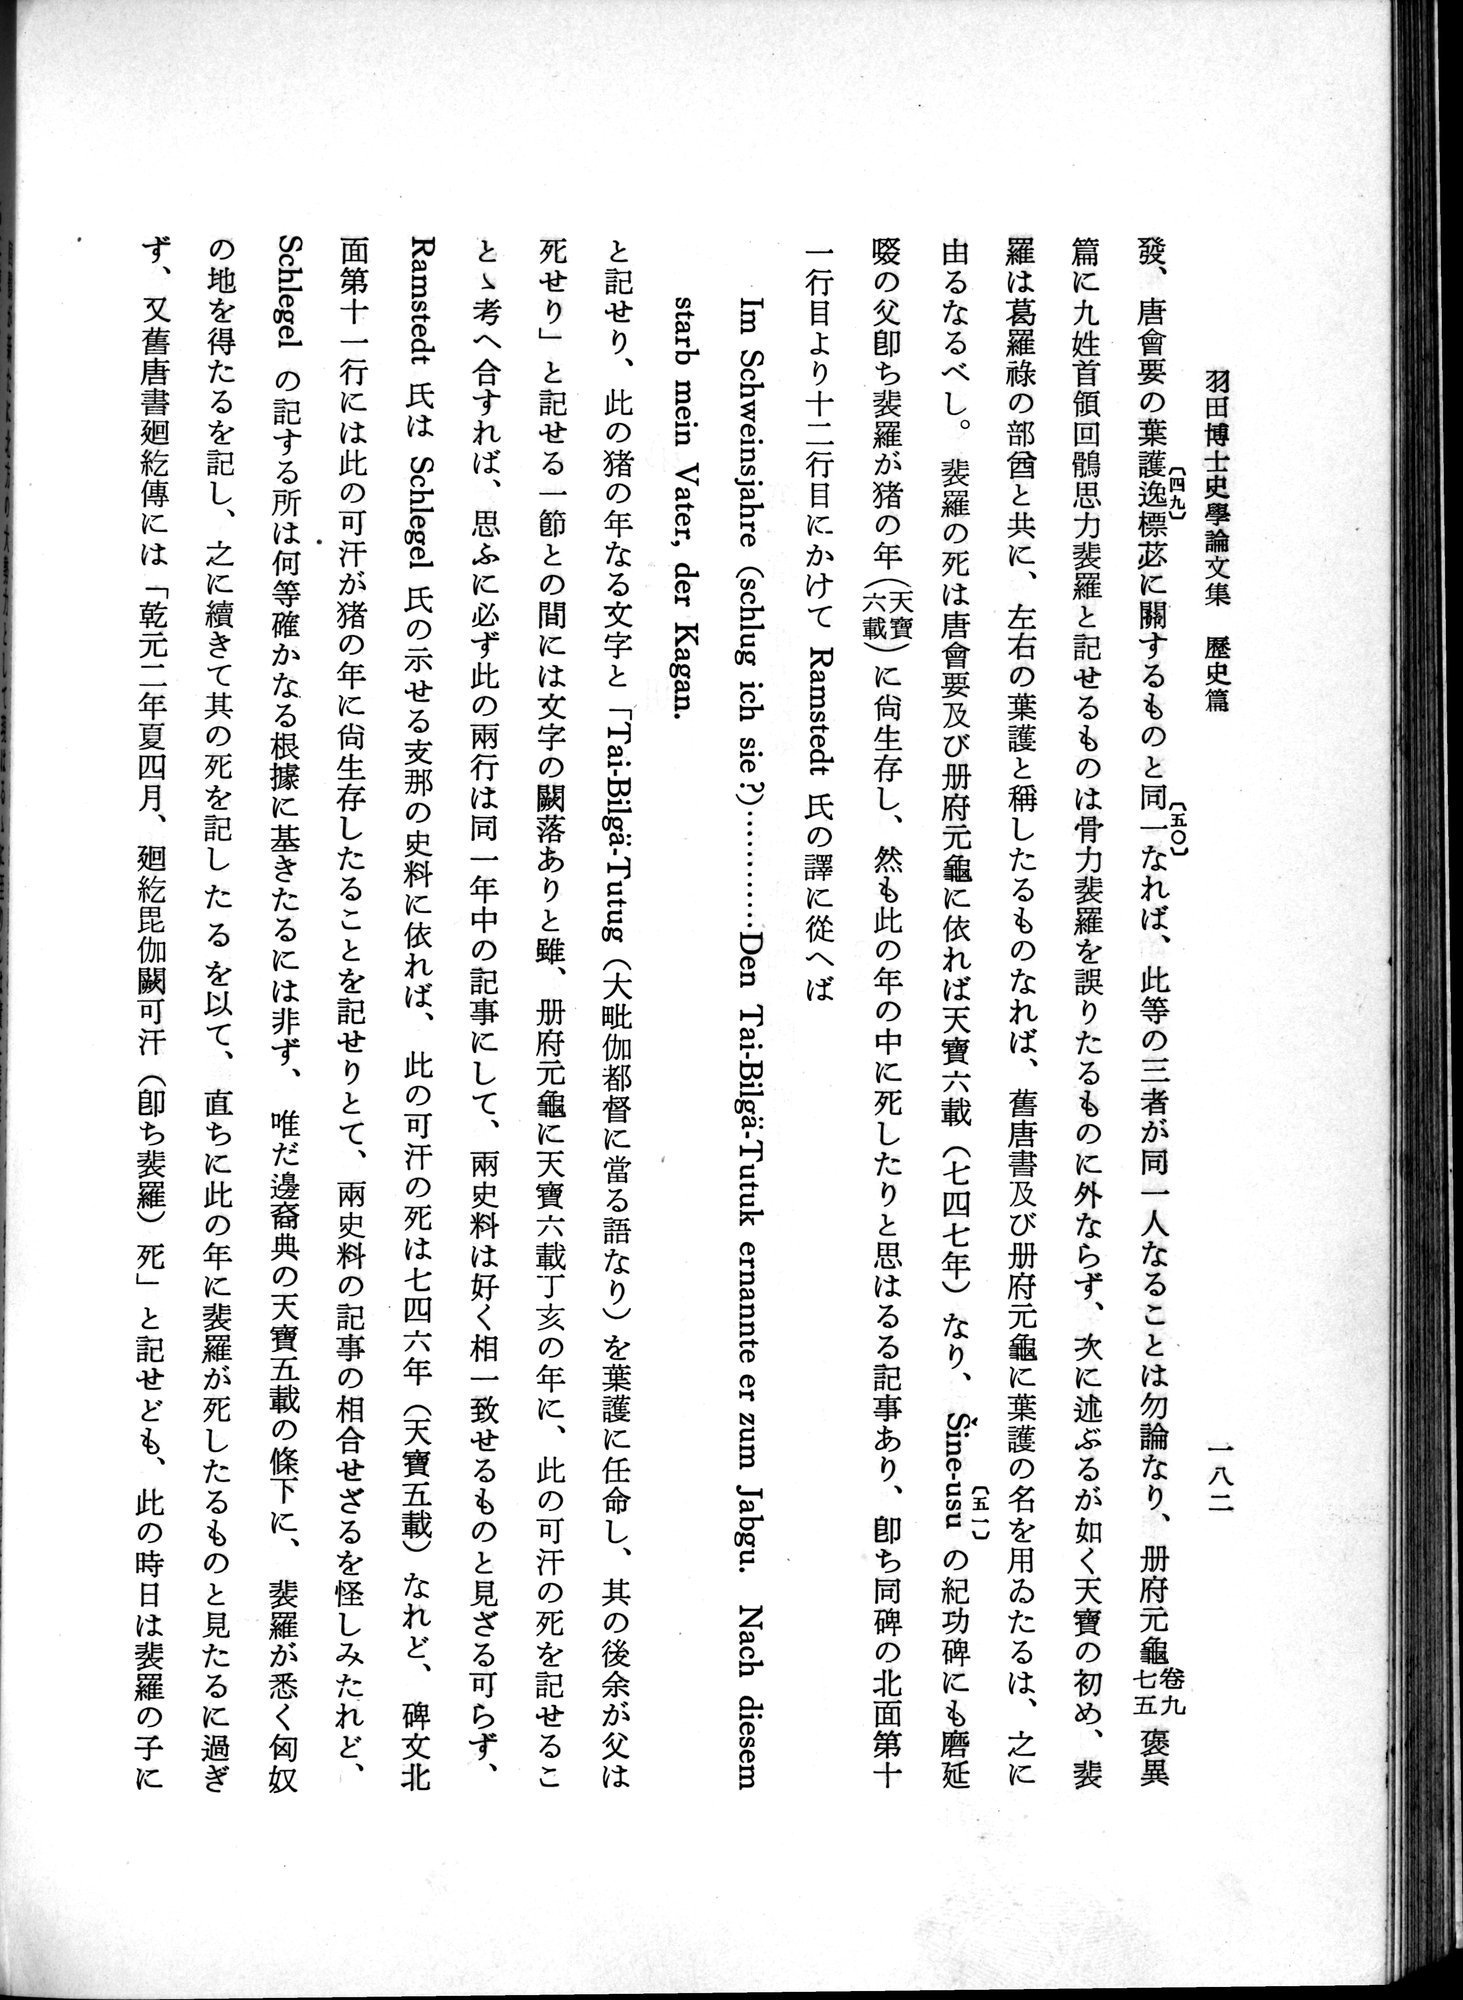 羽田博士史学論文集 : vol.1 / Page 220 (Grayscale High Resolution Image)